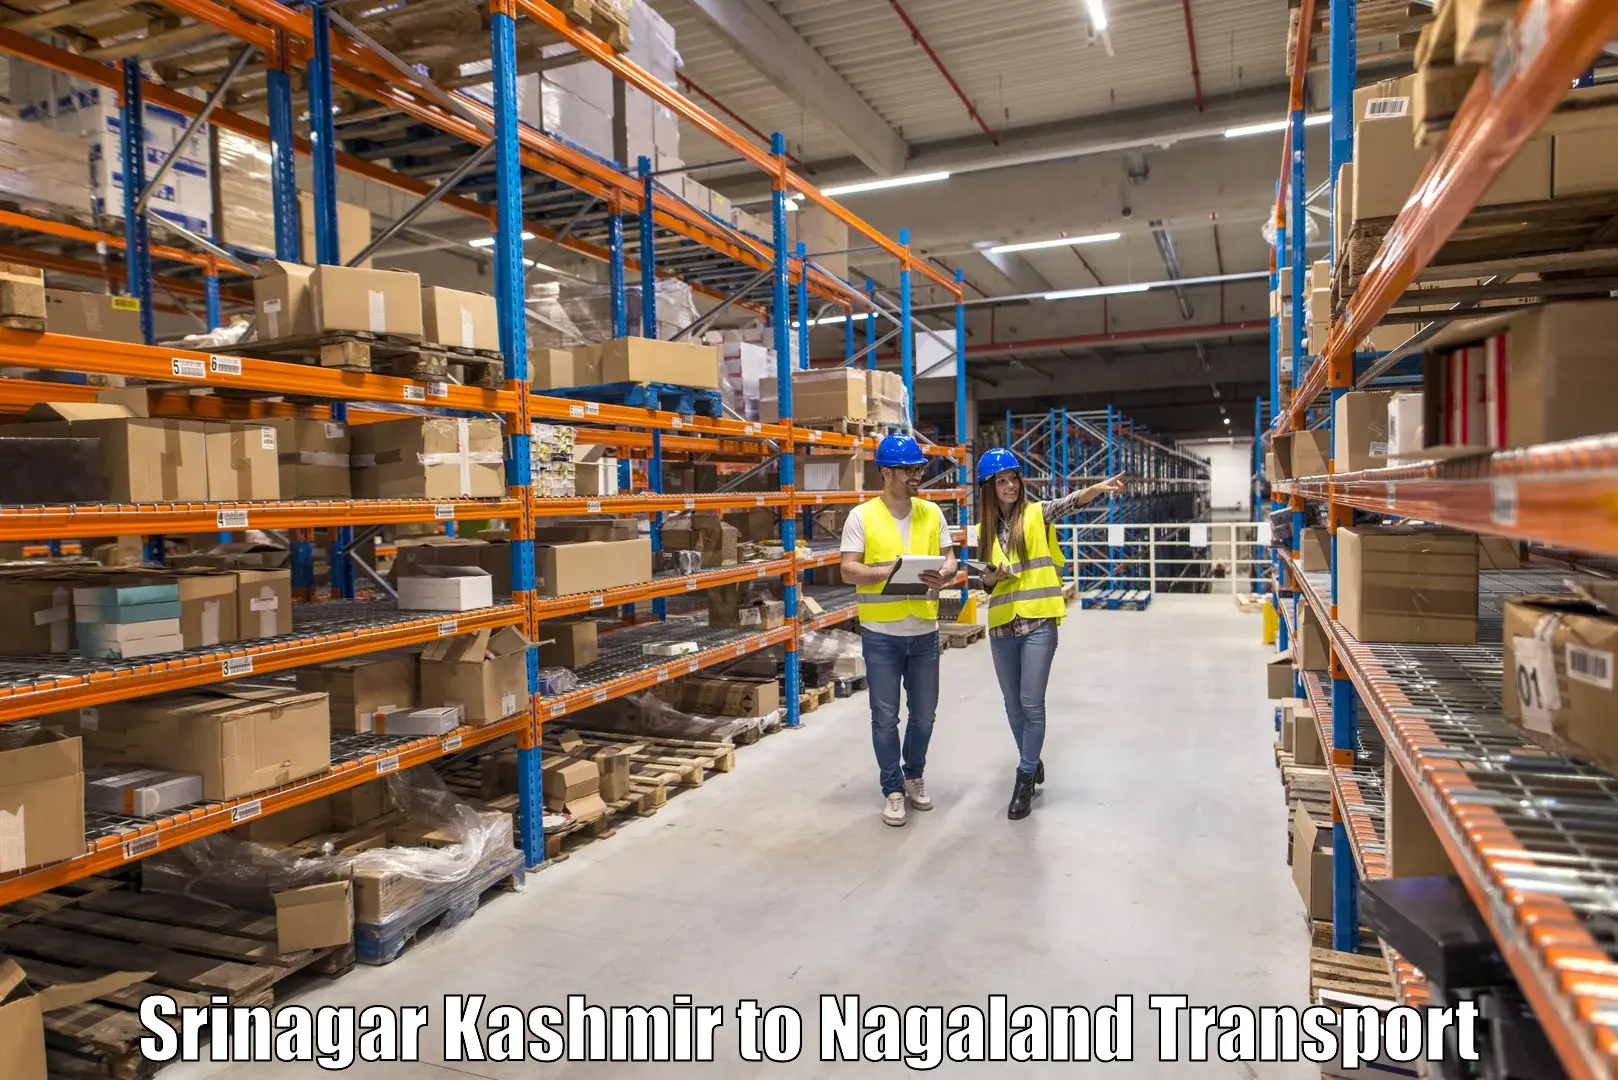 Goods delivery service Srinagar Kashmir to Nagaland